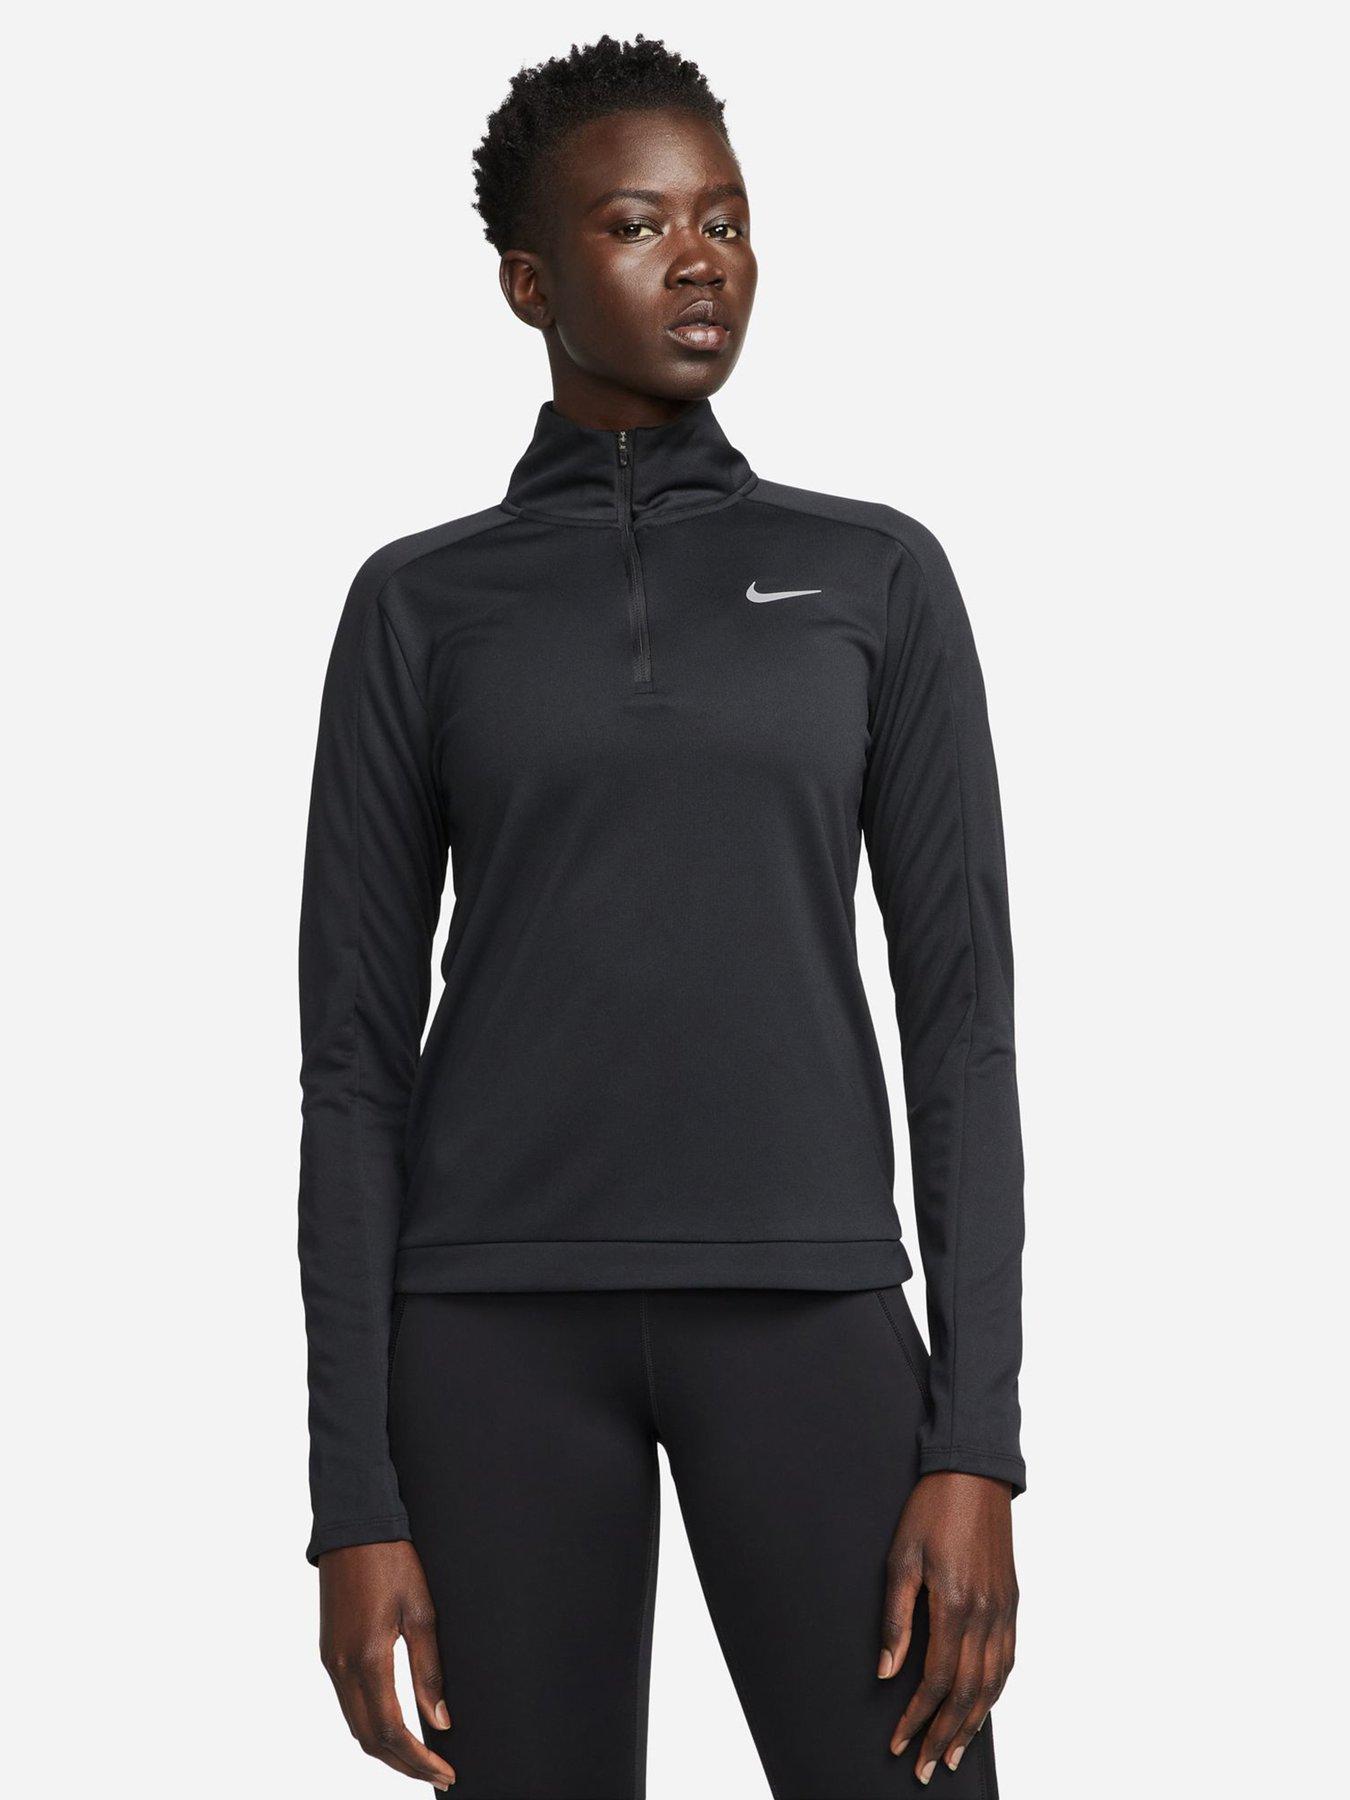 Long Sleeve | Tops t-shirts Women | Nike | www.very.co.uk